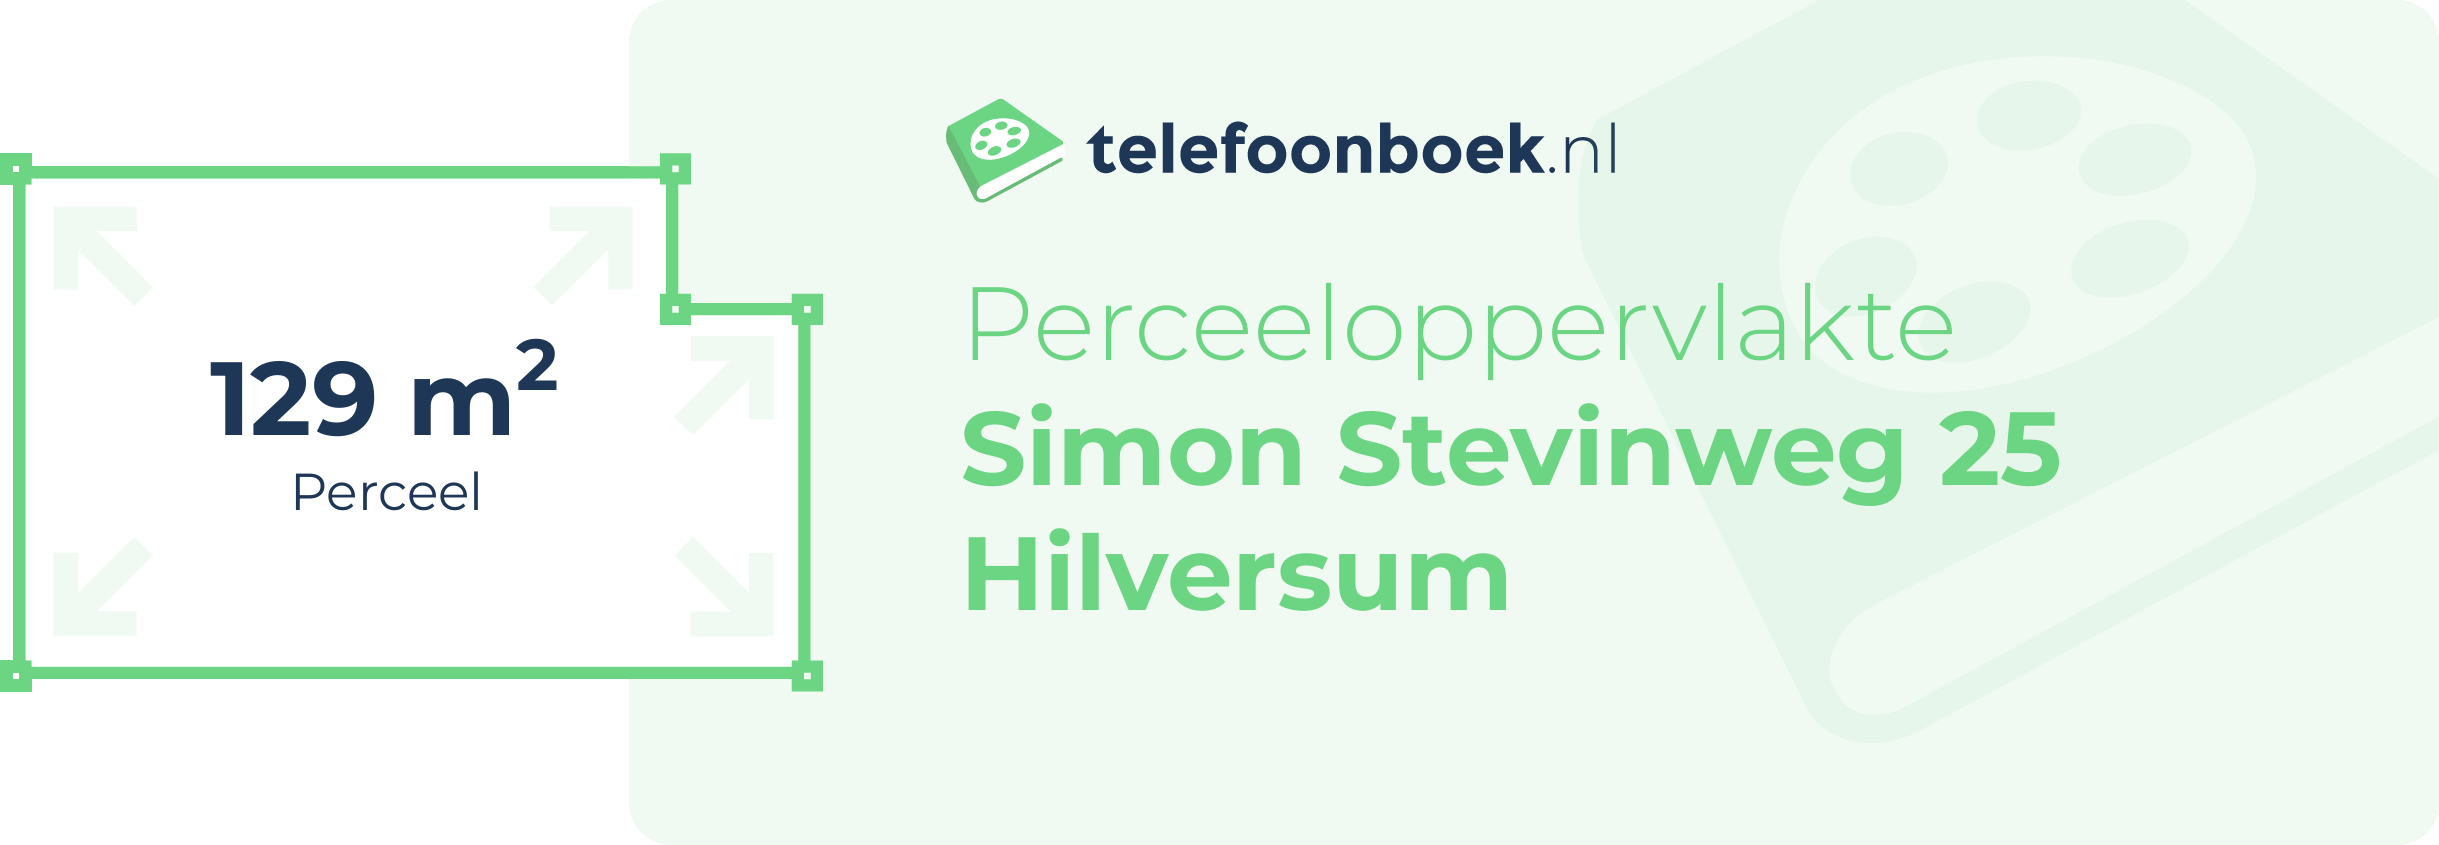 Perceeloppervlakte Simon Stevinweg 25 Hilversum